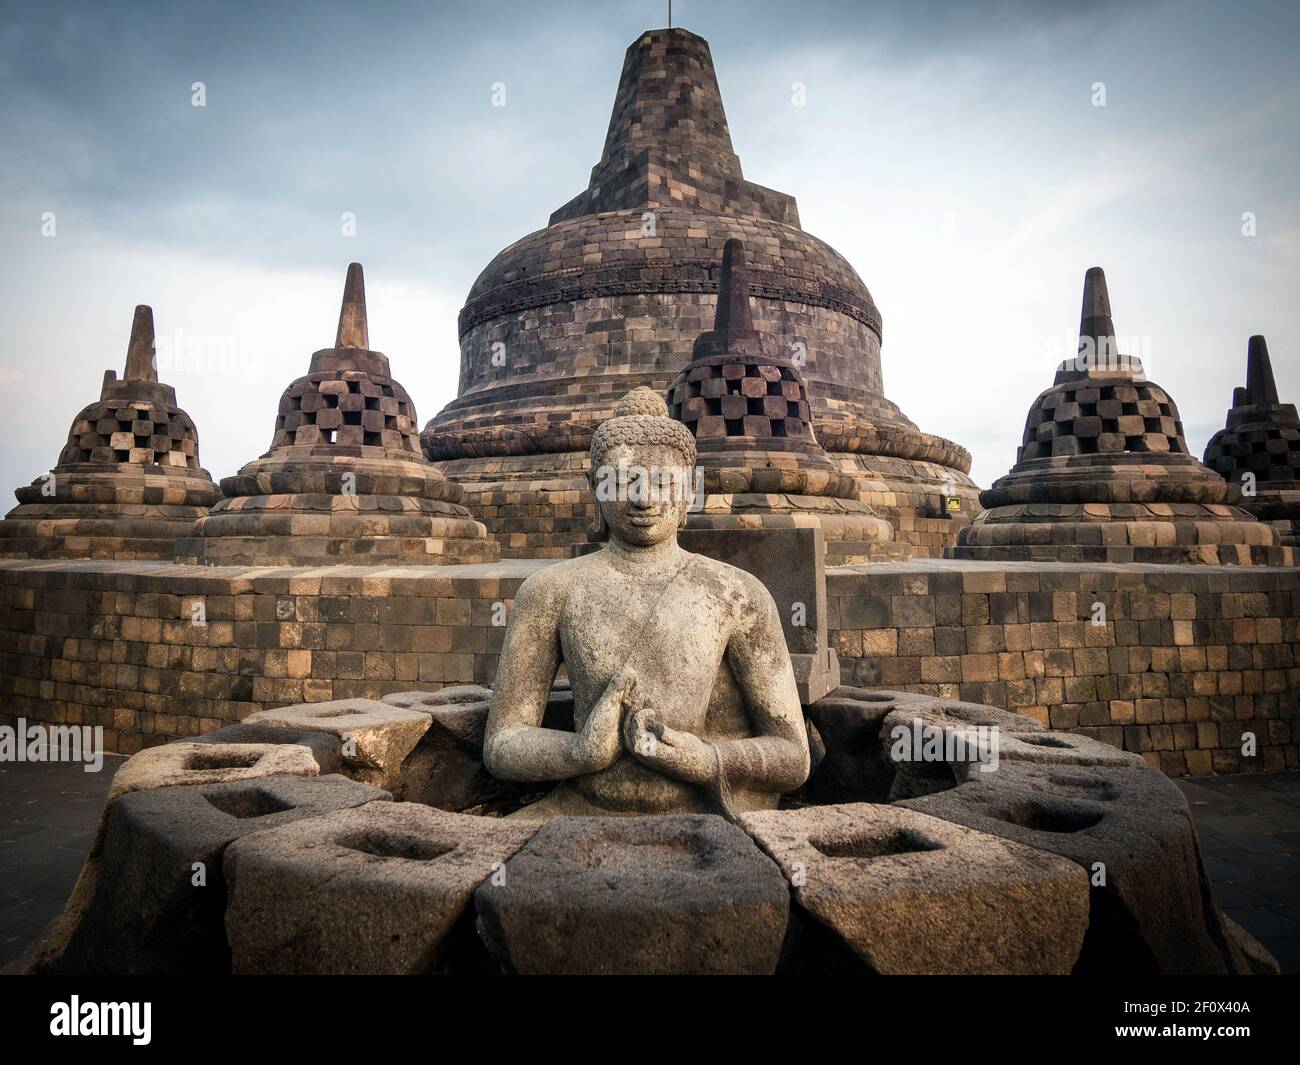 Ruines antiques de Borobudur, un temple bouddhiste Mahayana du IXe siècle dans la Régence de Magelang près de Yogyakarta dans le centre de Java, en Indonésie. Banque D'Images